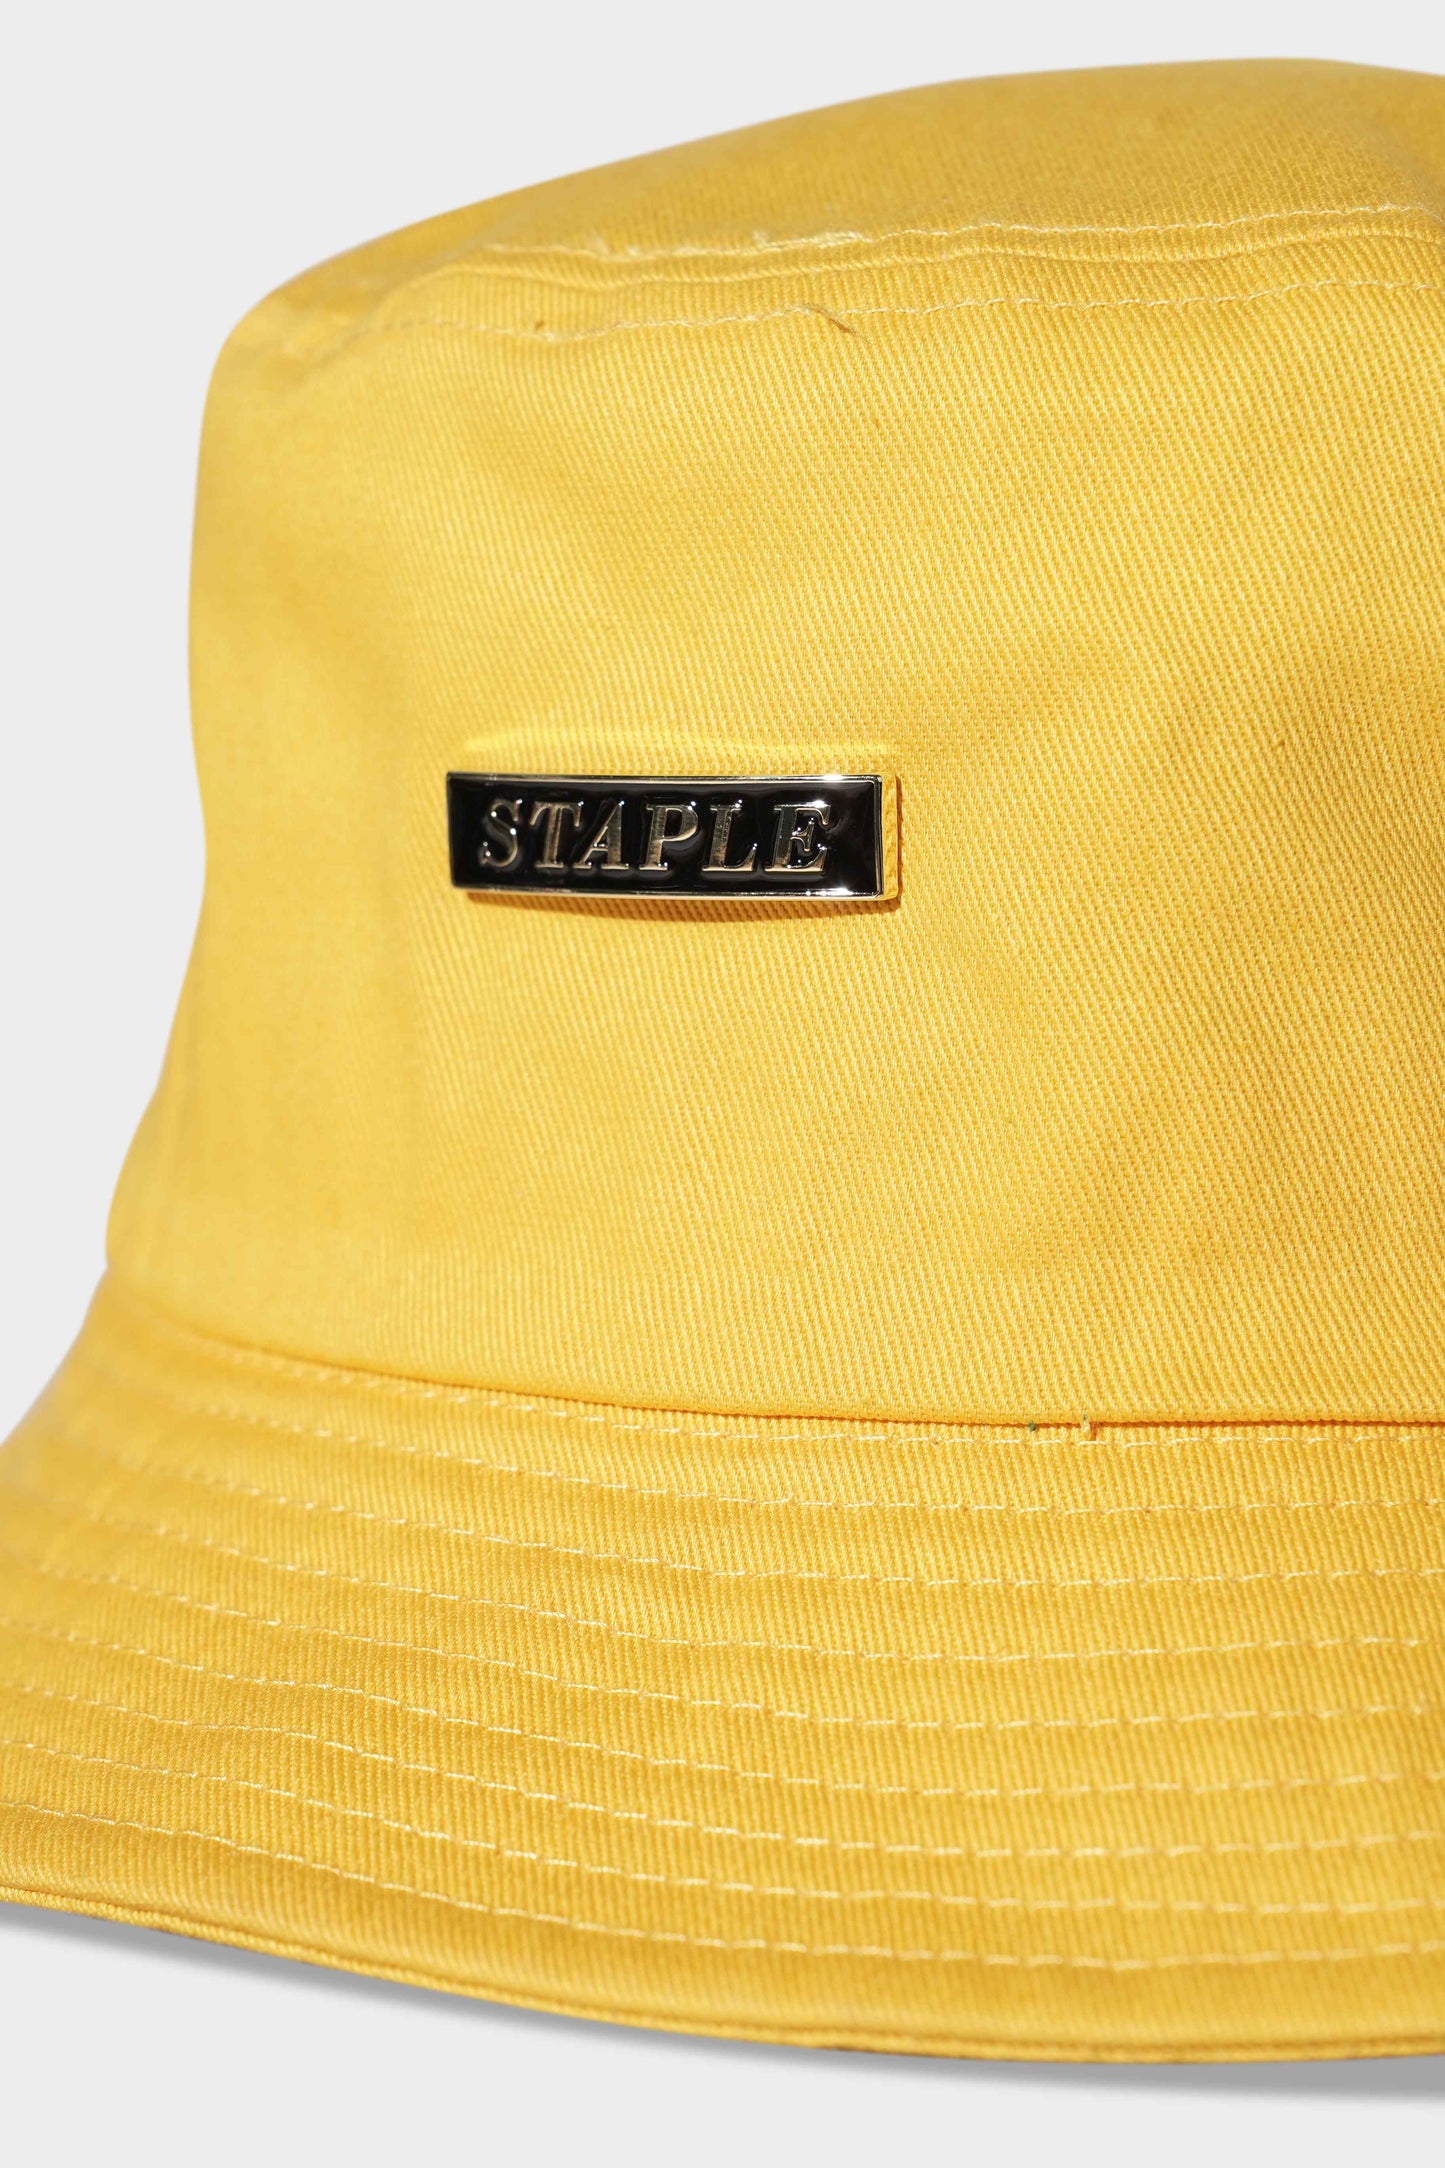 Staple Bedlam Bucky Hat Yellow